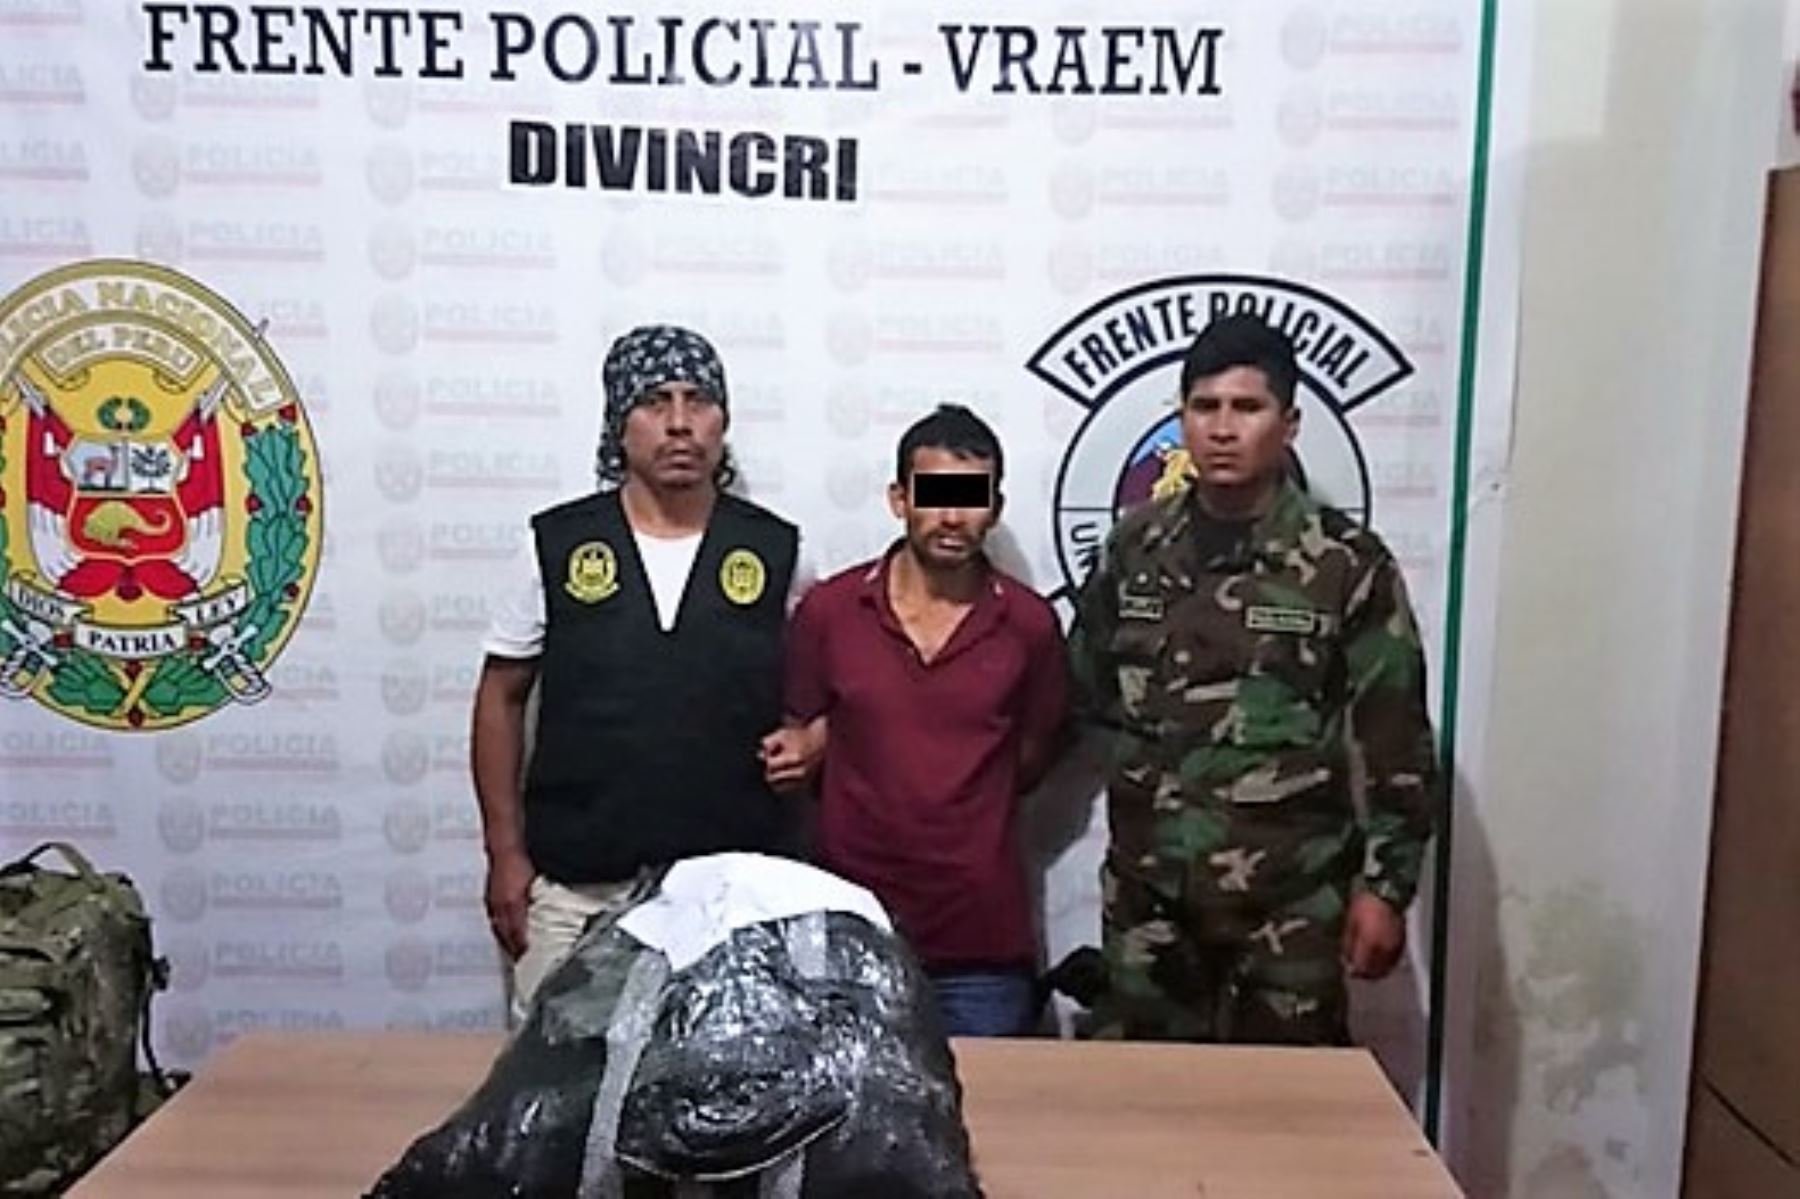 Policía incauta 21 kilos de cocaína y detiene a una persona tras operativo en el Vraem.